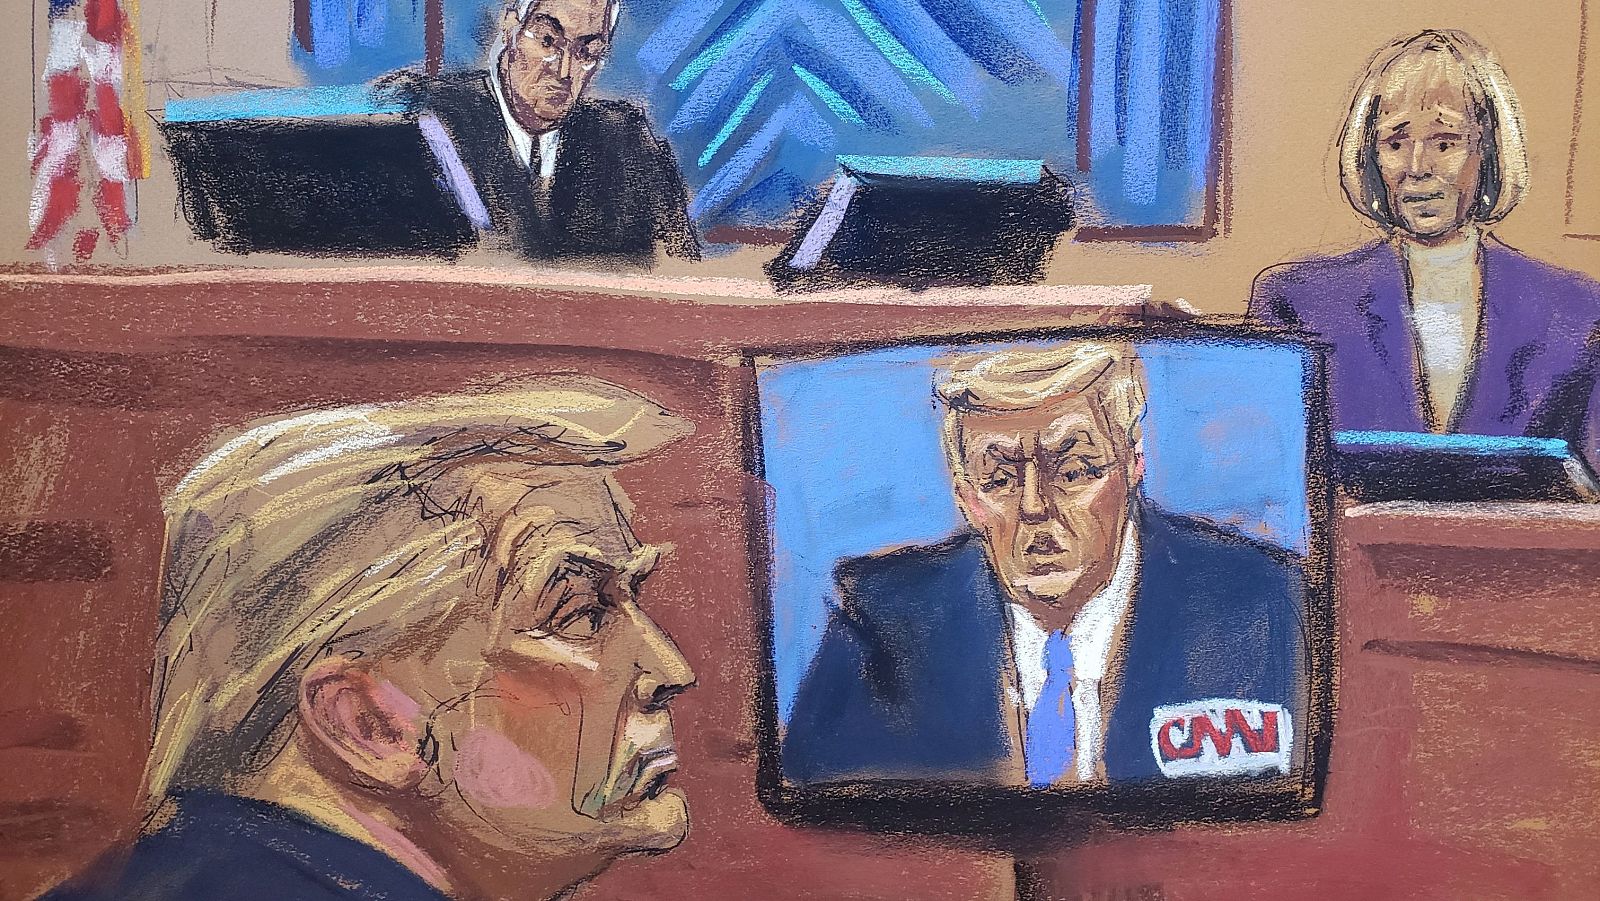 El juez amenazó con expulsar a Trump durante su juicio de difamación